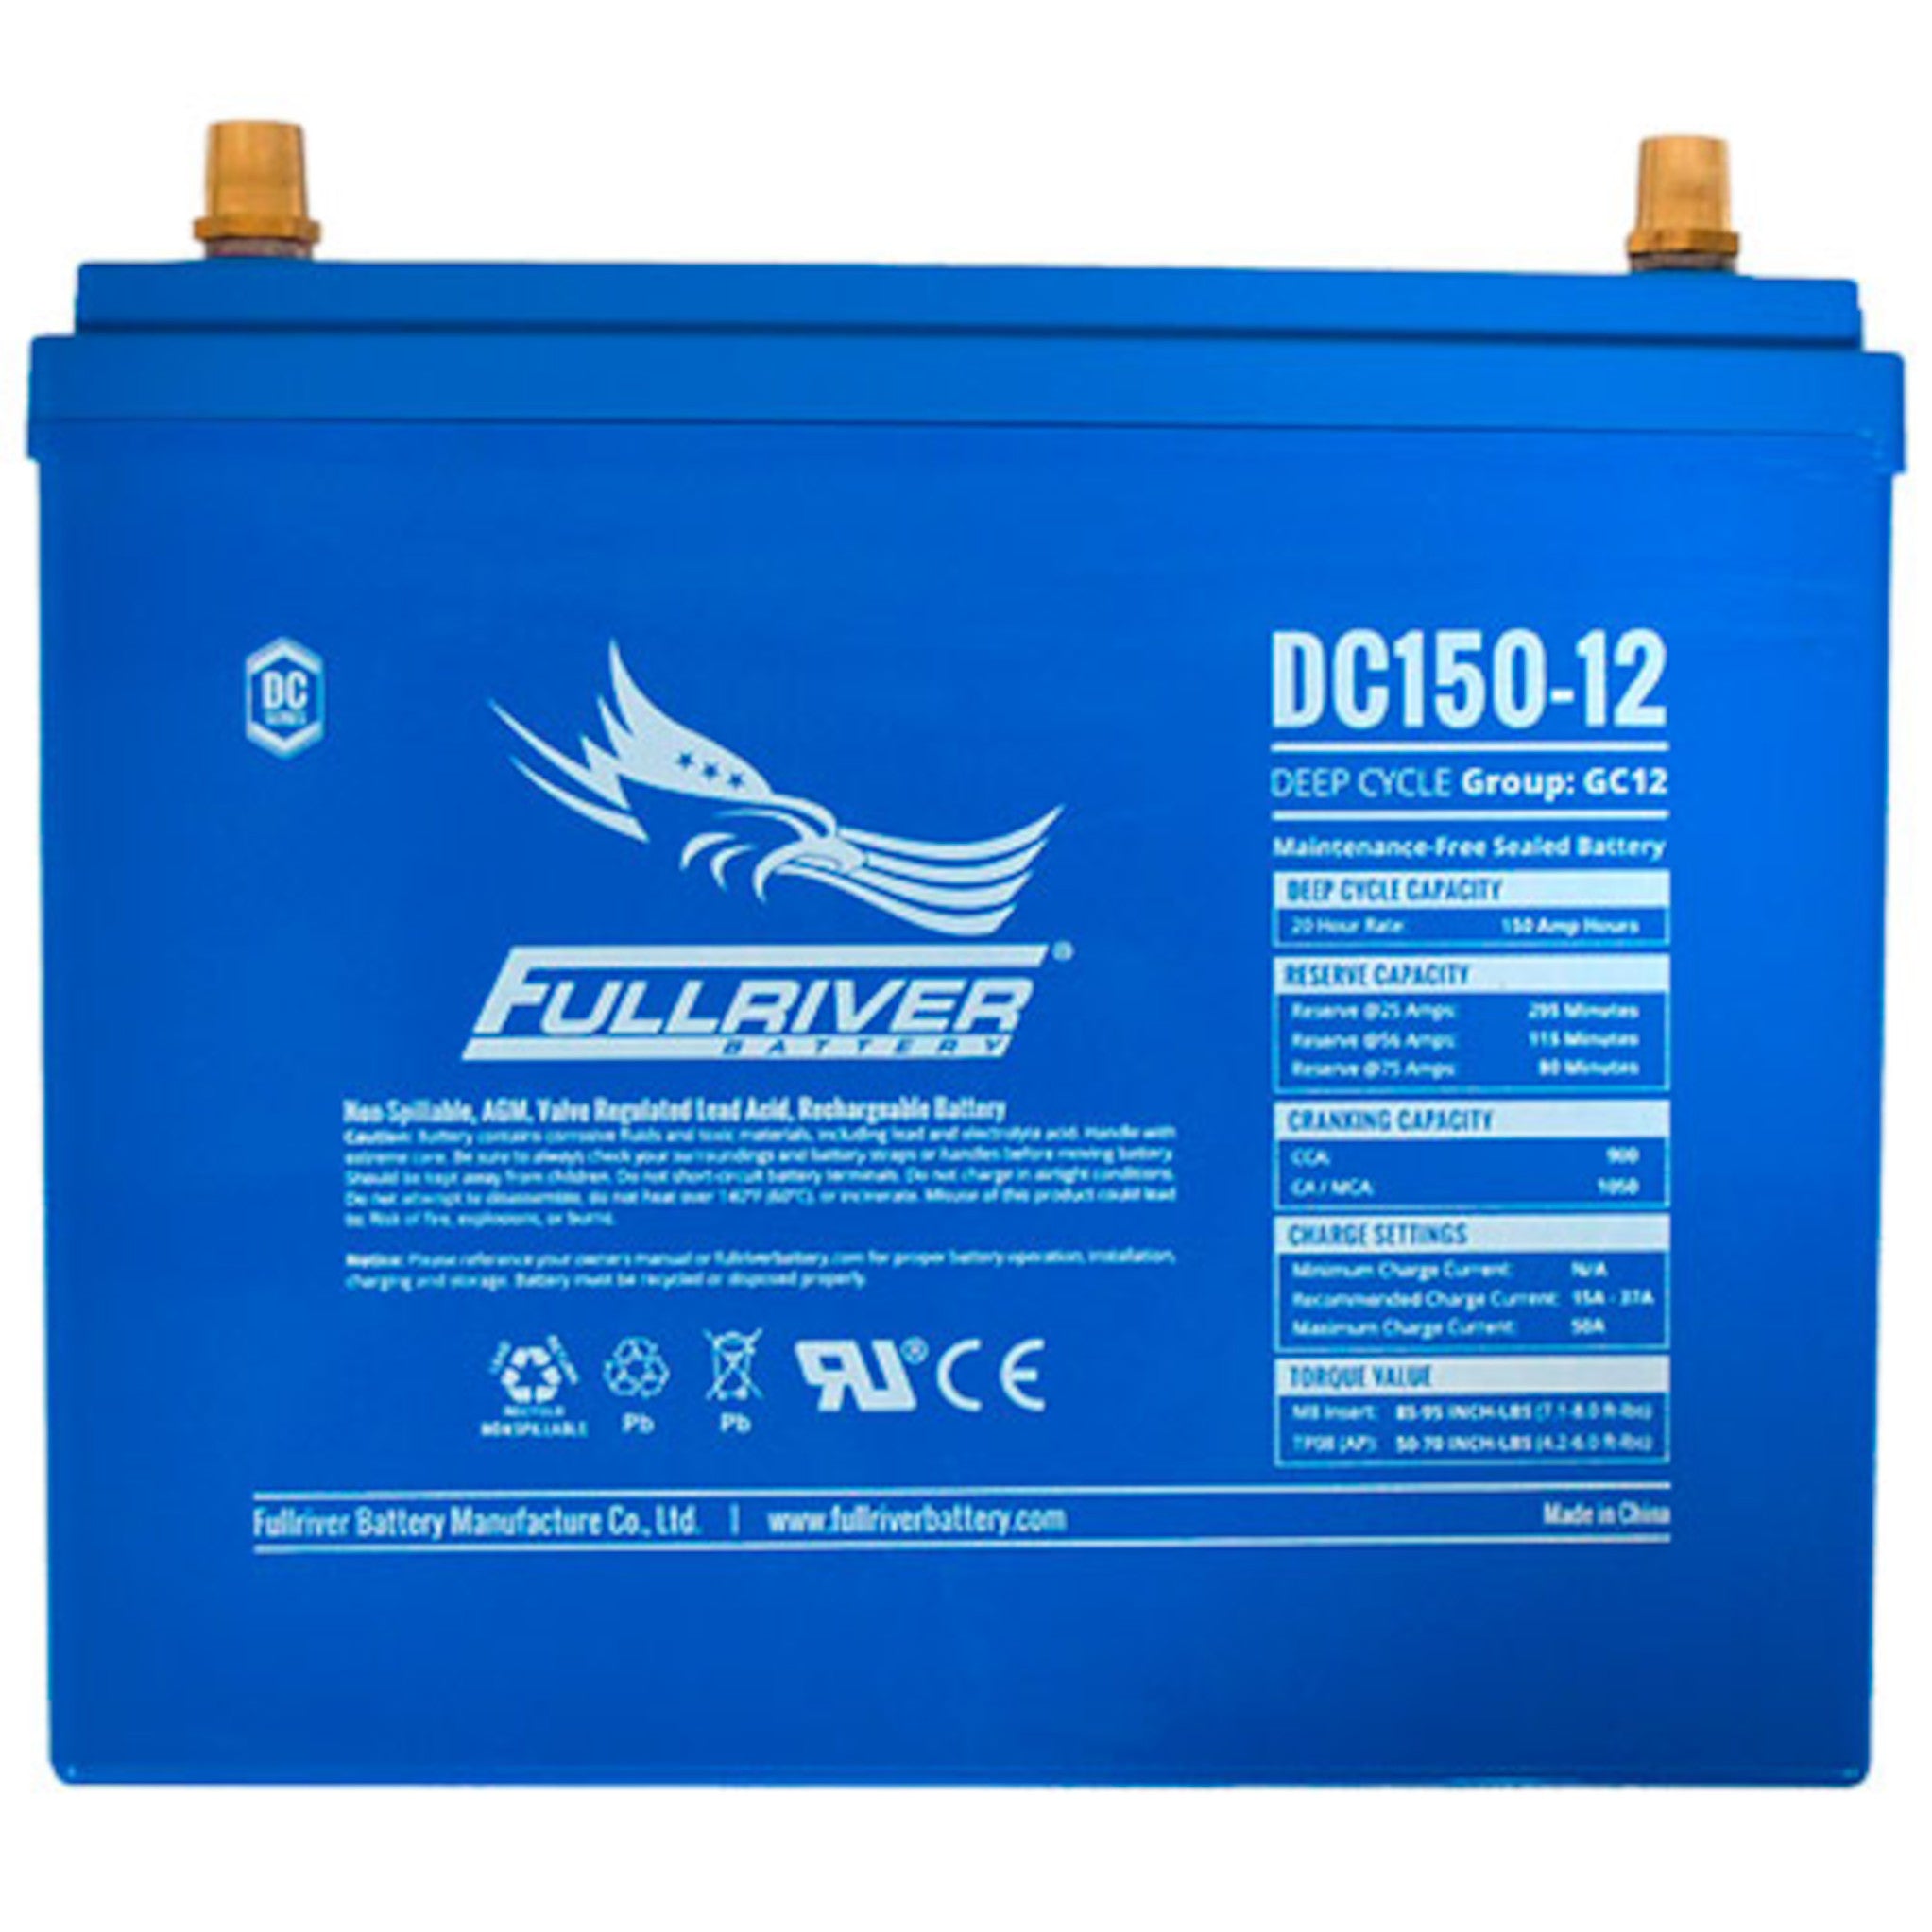 Fullriver DC150-12 AGM Battery